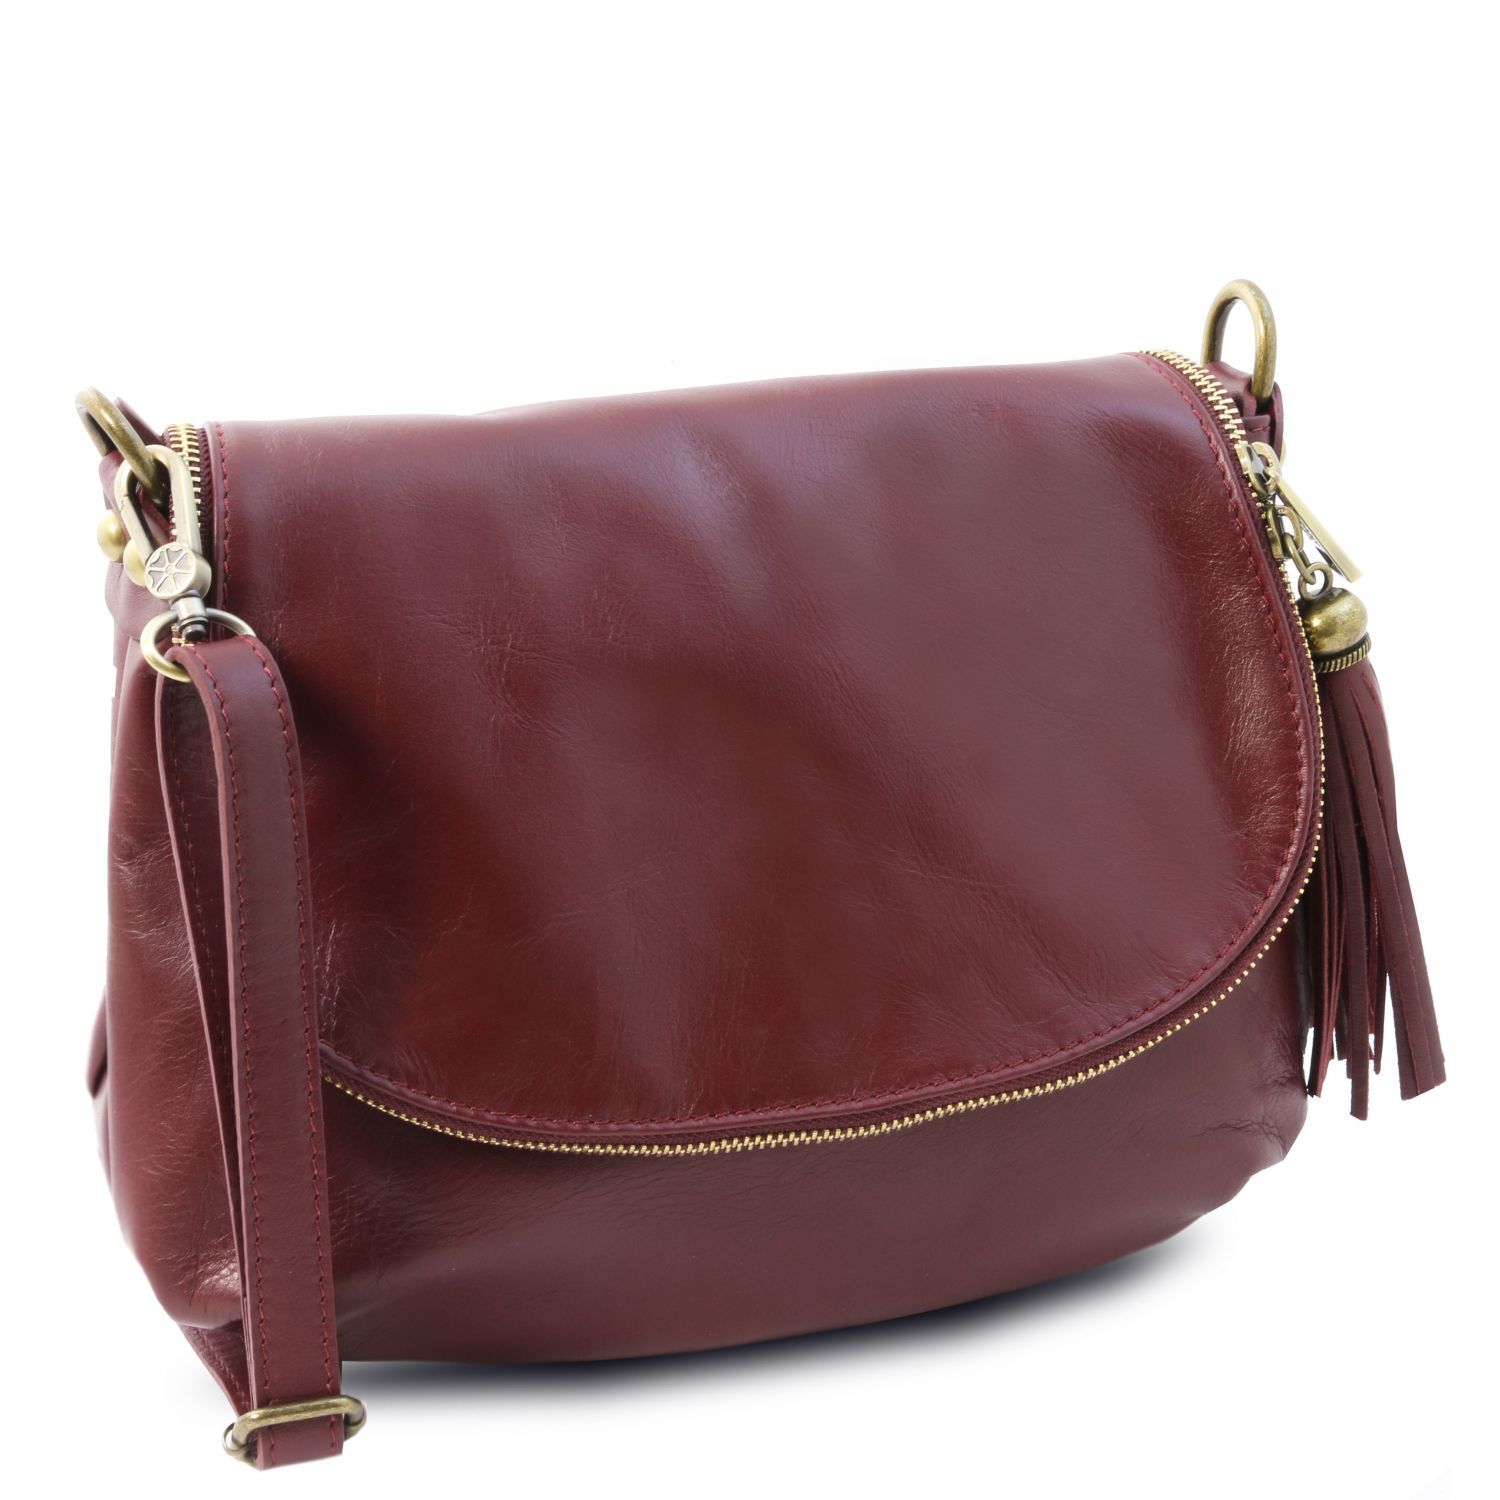 TL Bag Soft Leather Shoulder bag With Tassel Detail Bordeaux TL141223